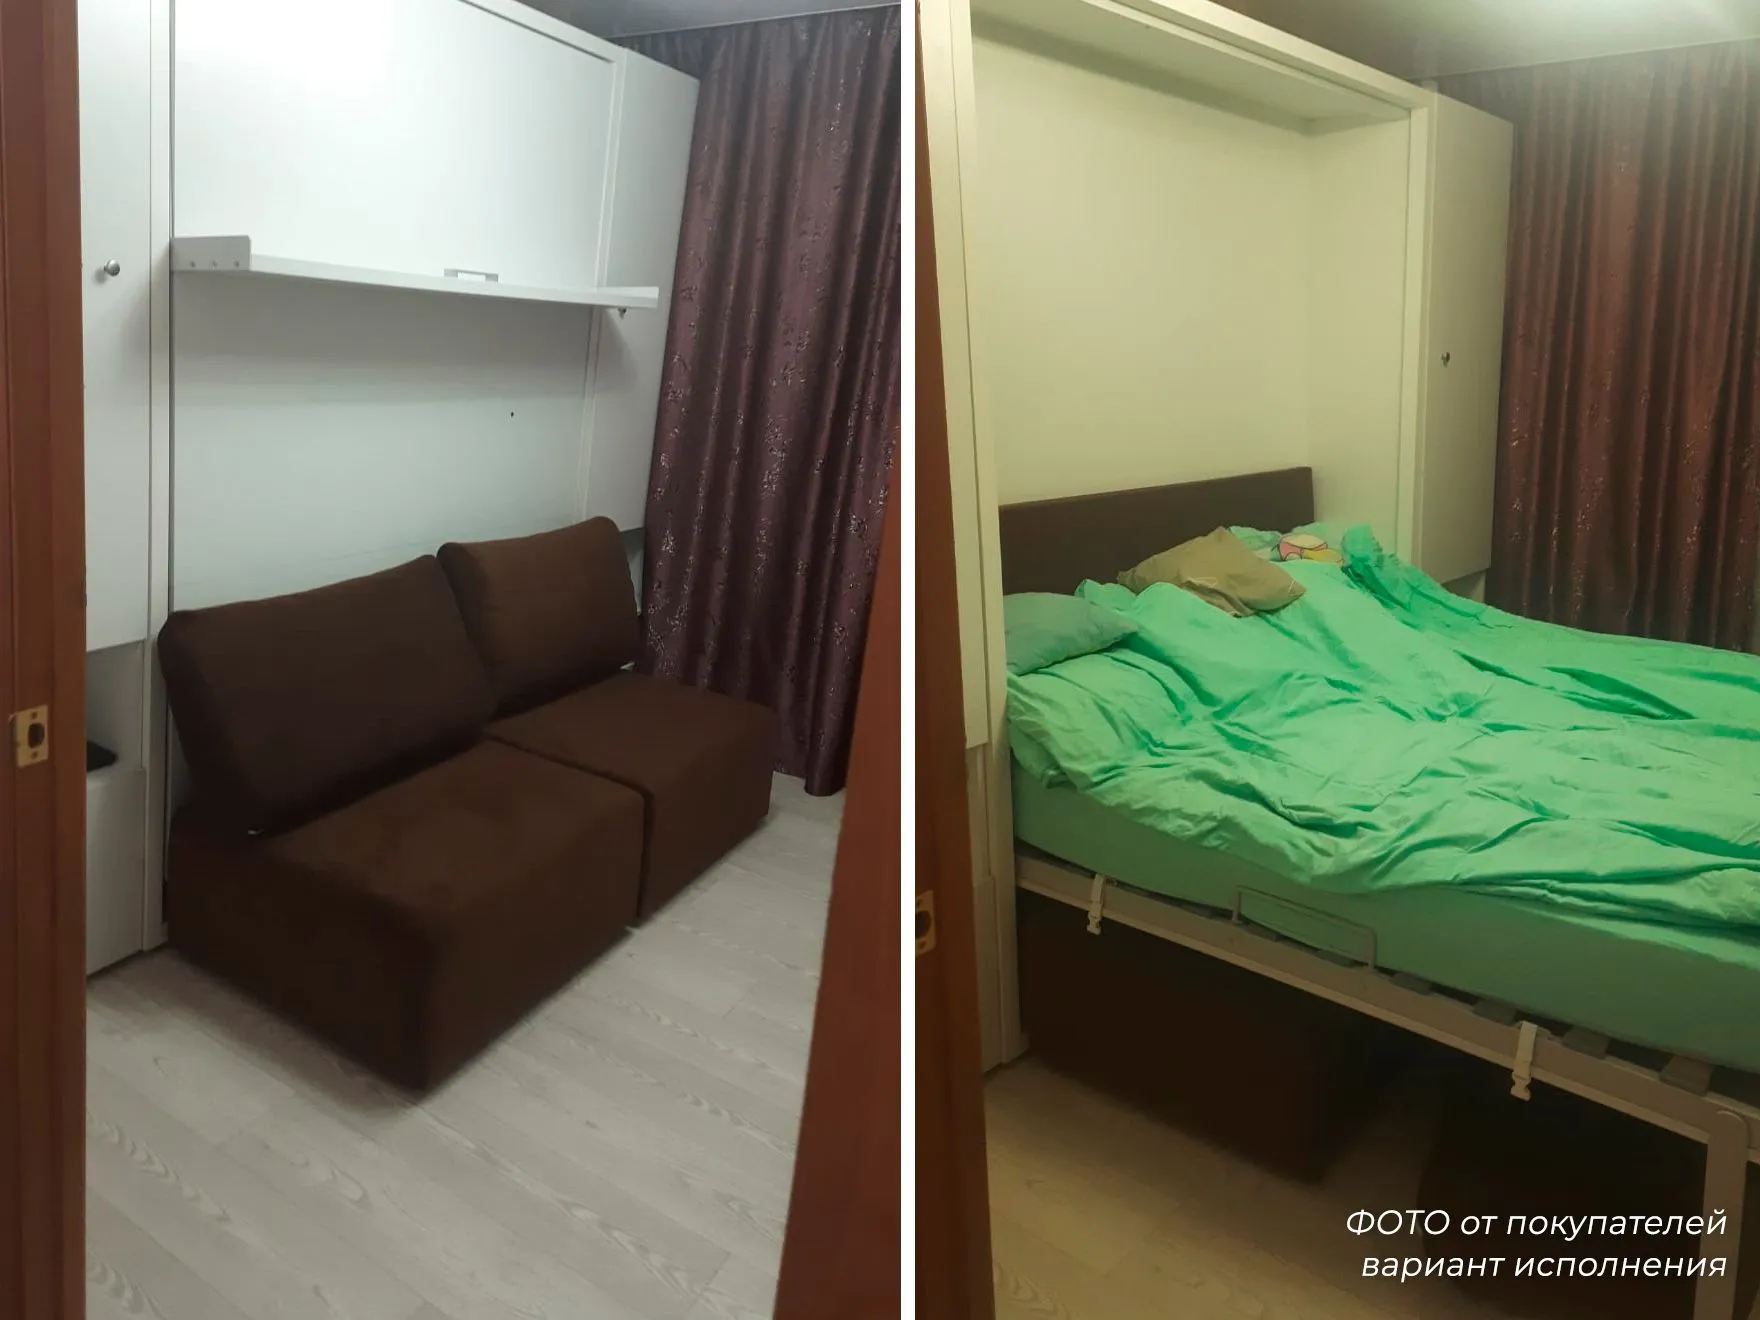 Кровать-трансформер с диваном Smart 1600